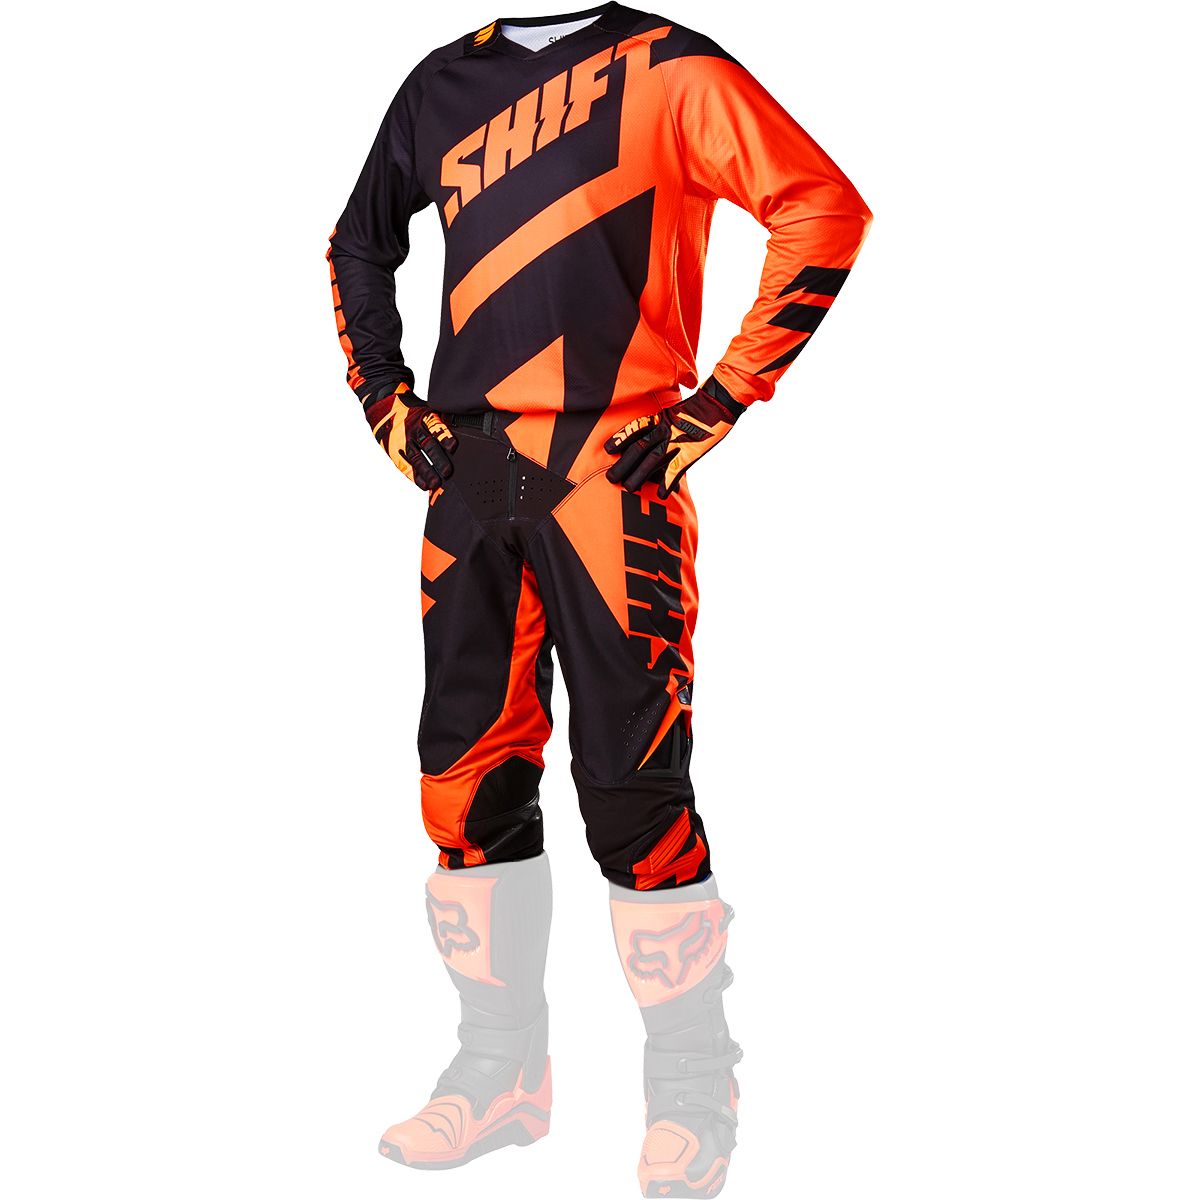 Shift - 2017 3LACK Mainline комплект штаны и джерси, черно-оранжевые